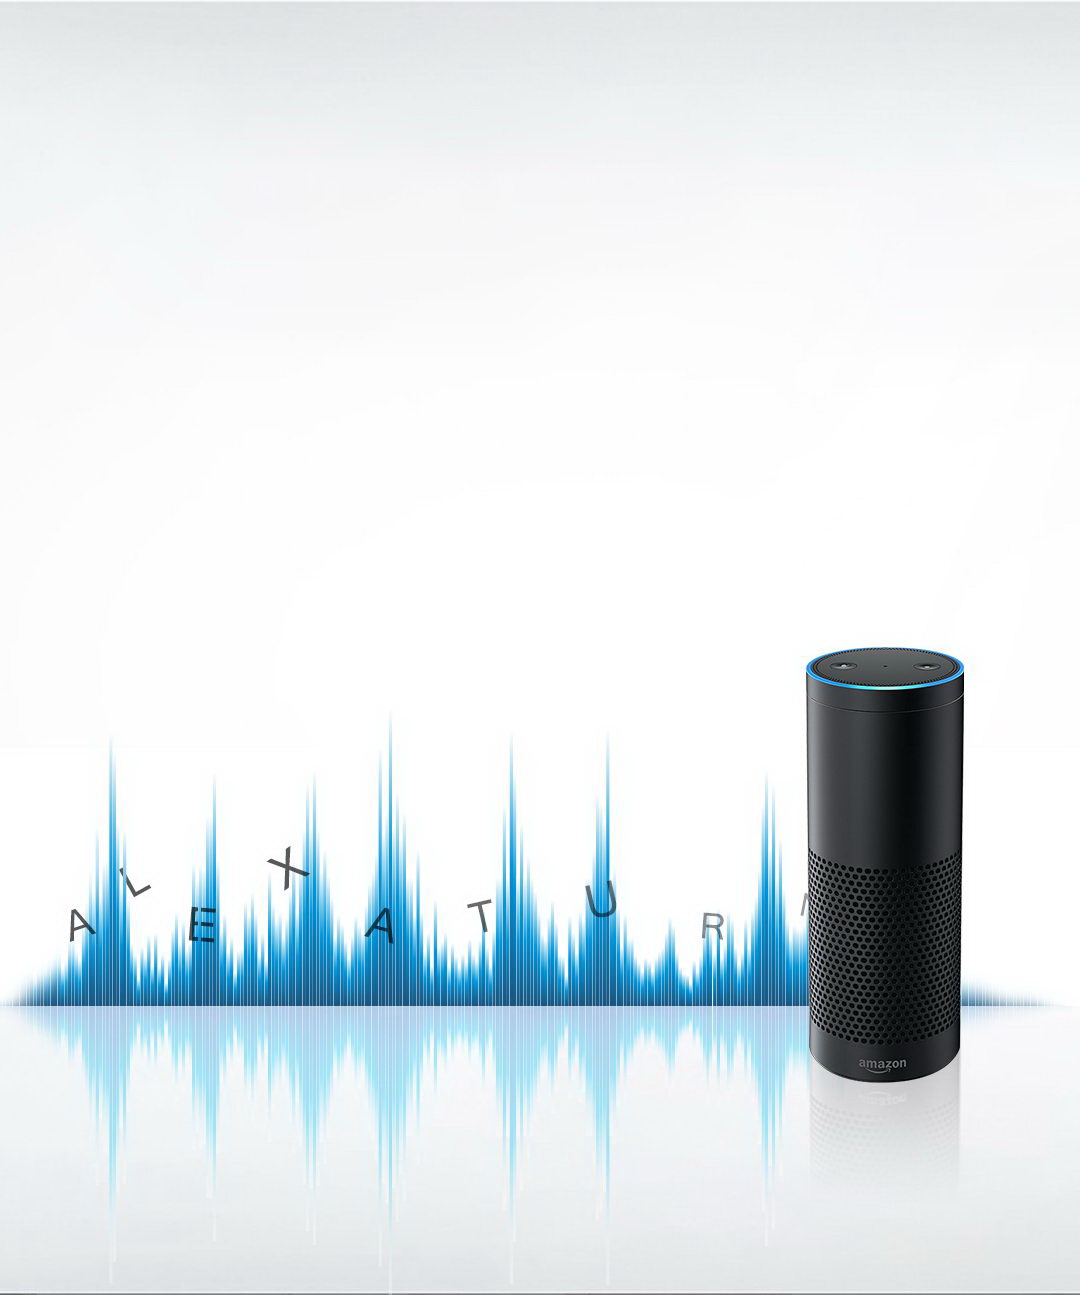 Comando de Voz disponible con Amazon Echo – Capacidades TIS